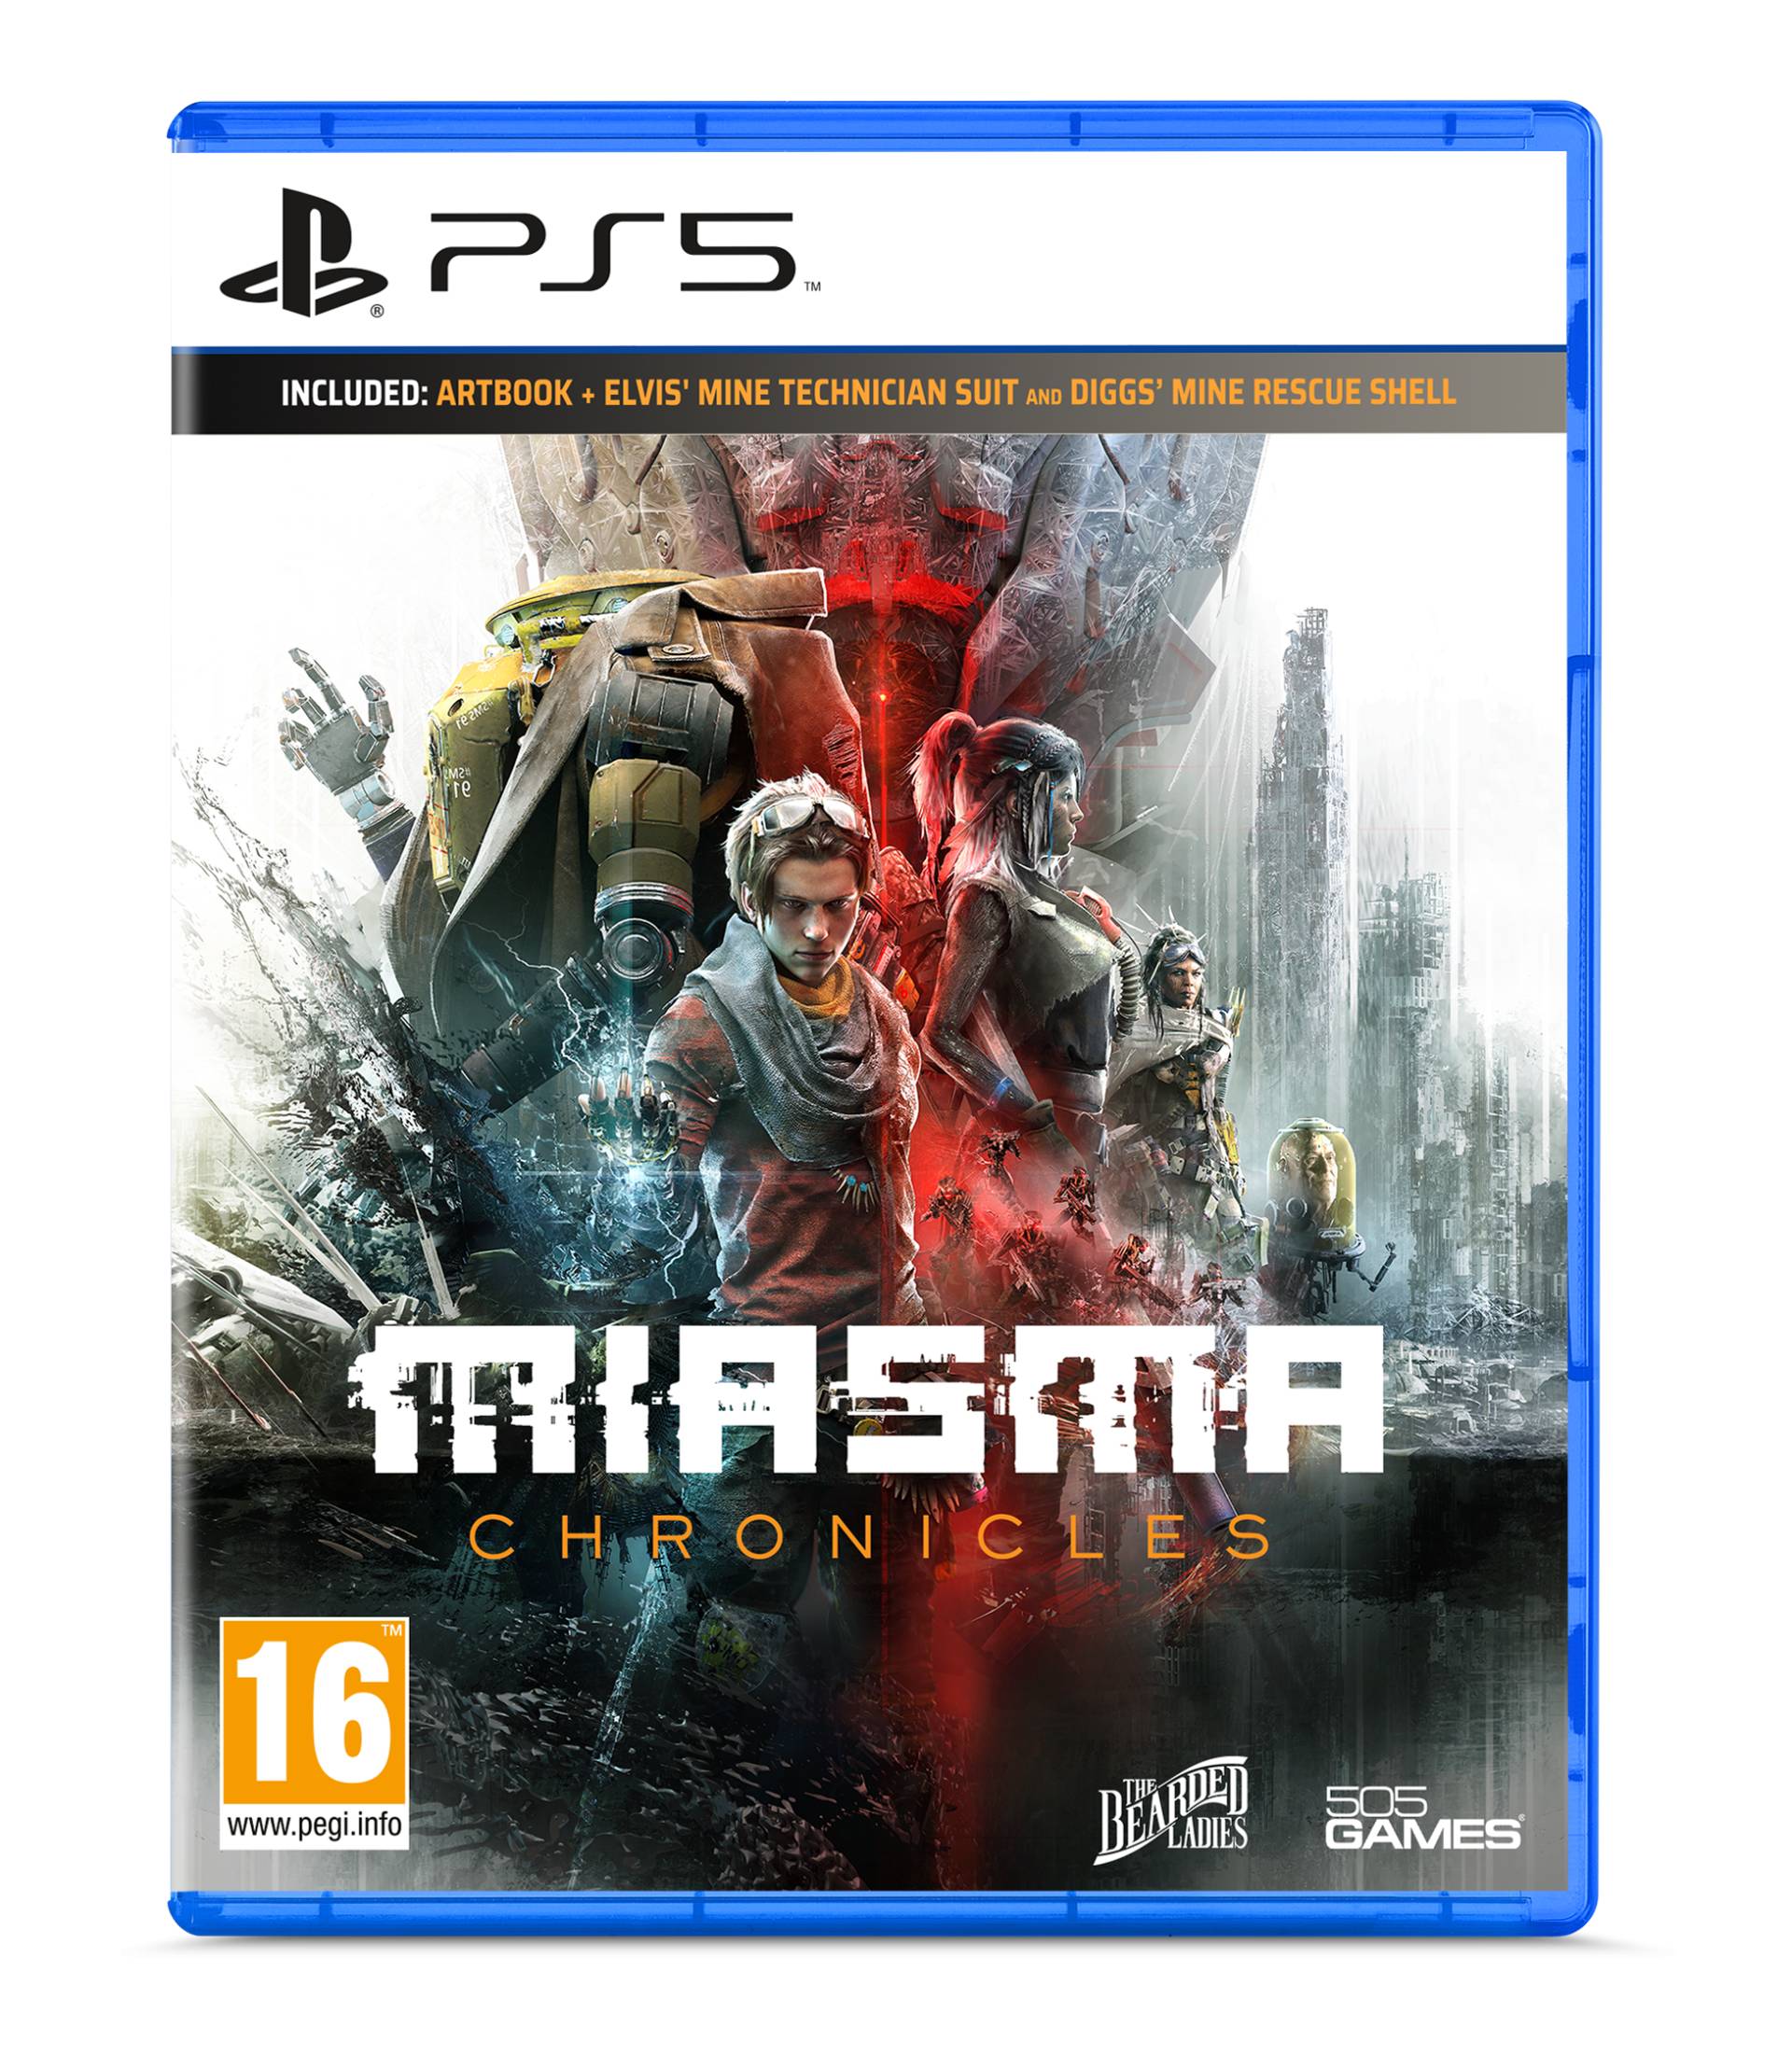 Miasma Chronicles von 505 Games